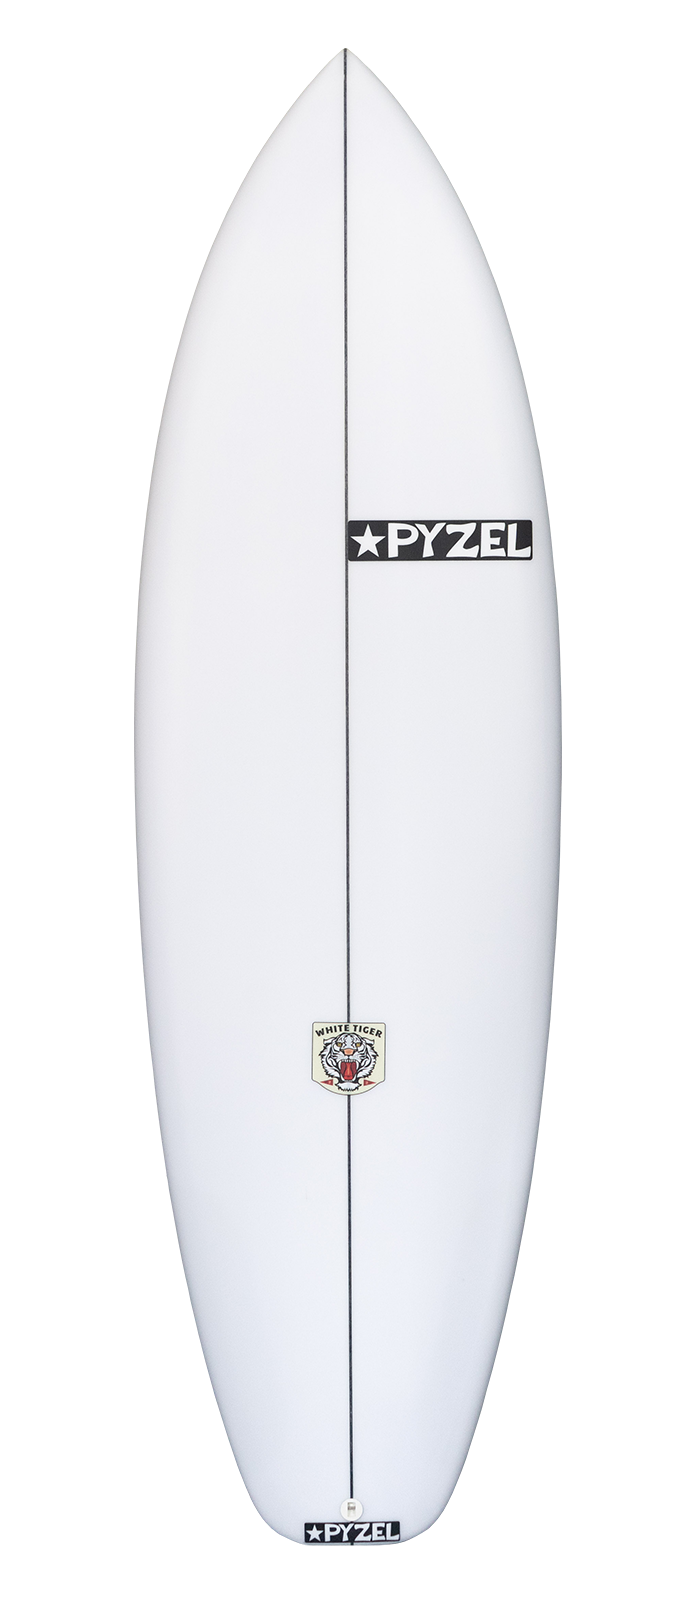 Planche de surf PYZEL White Tiger 5'5 - 26,9Lts FCSII